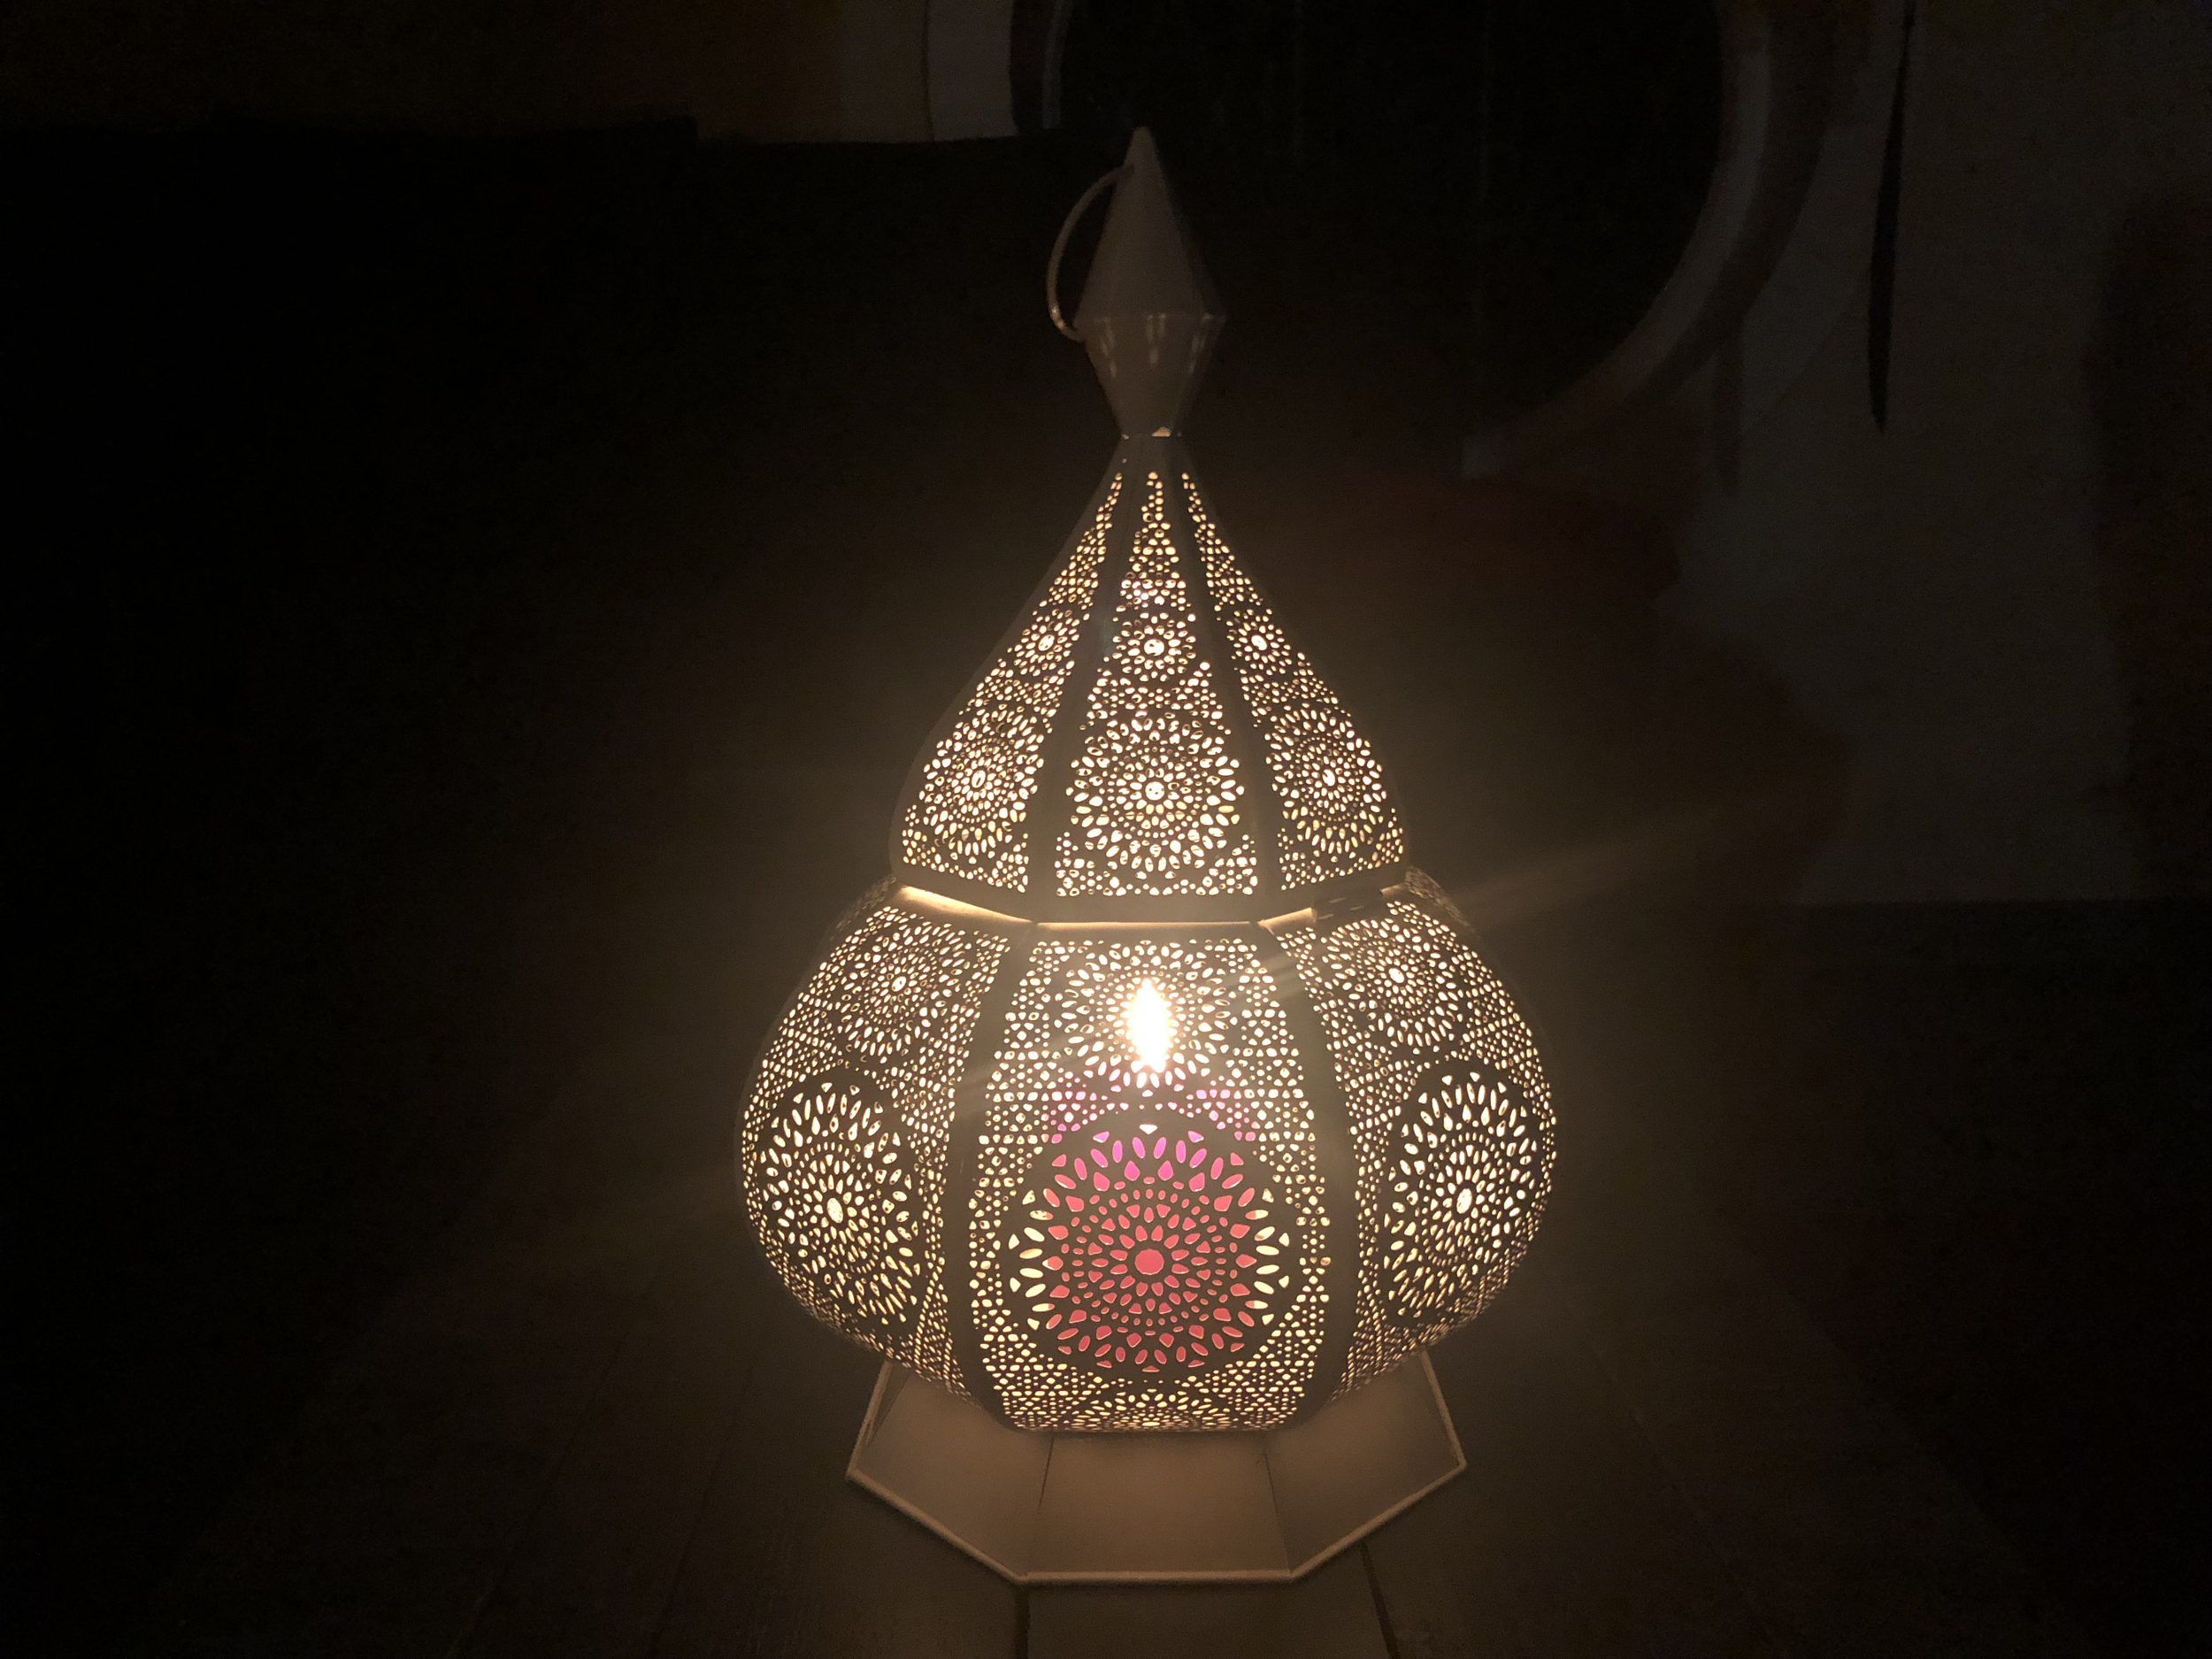 Berk Orientalisches Licht "Wunderlampe" 